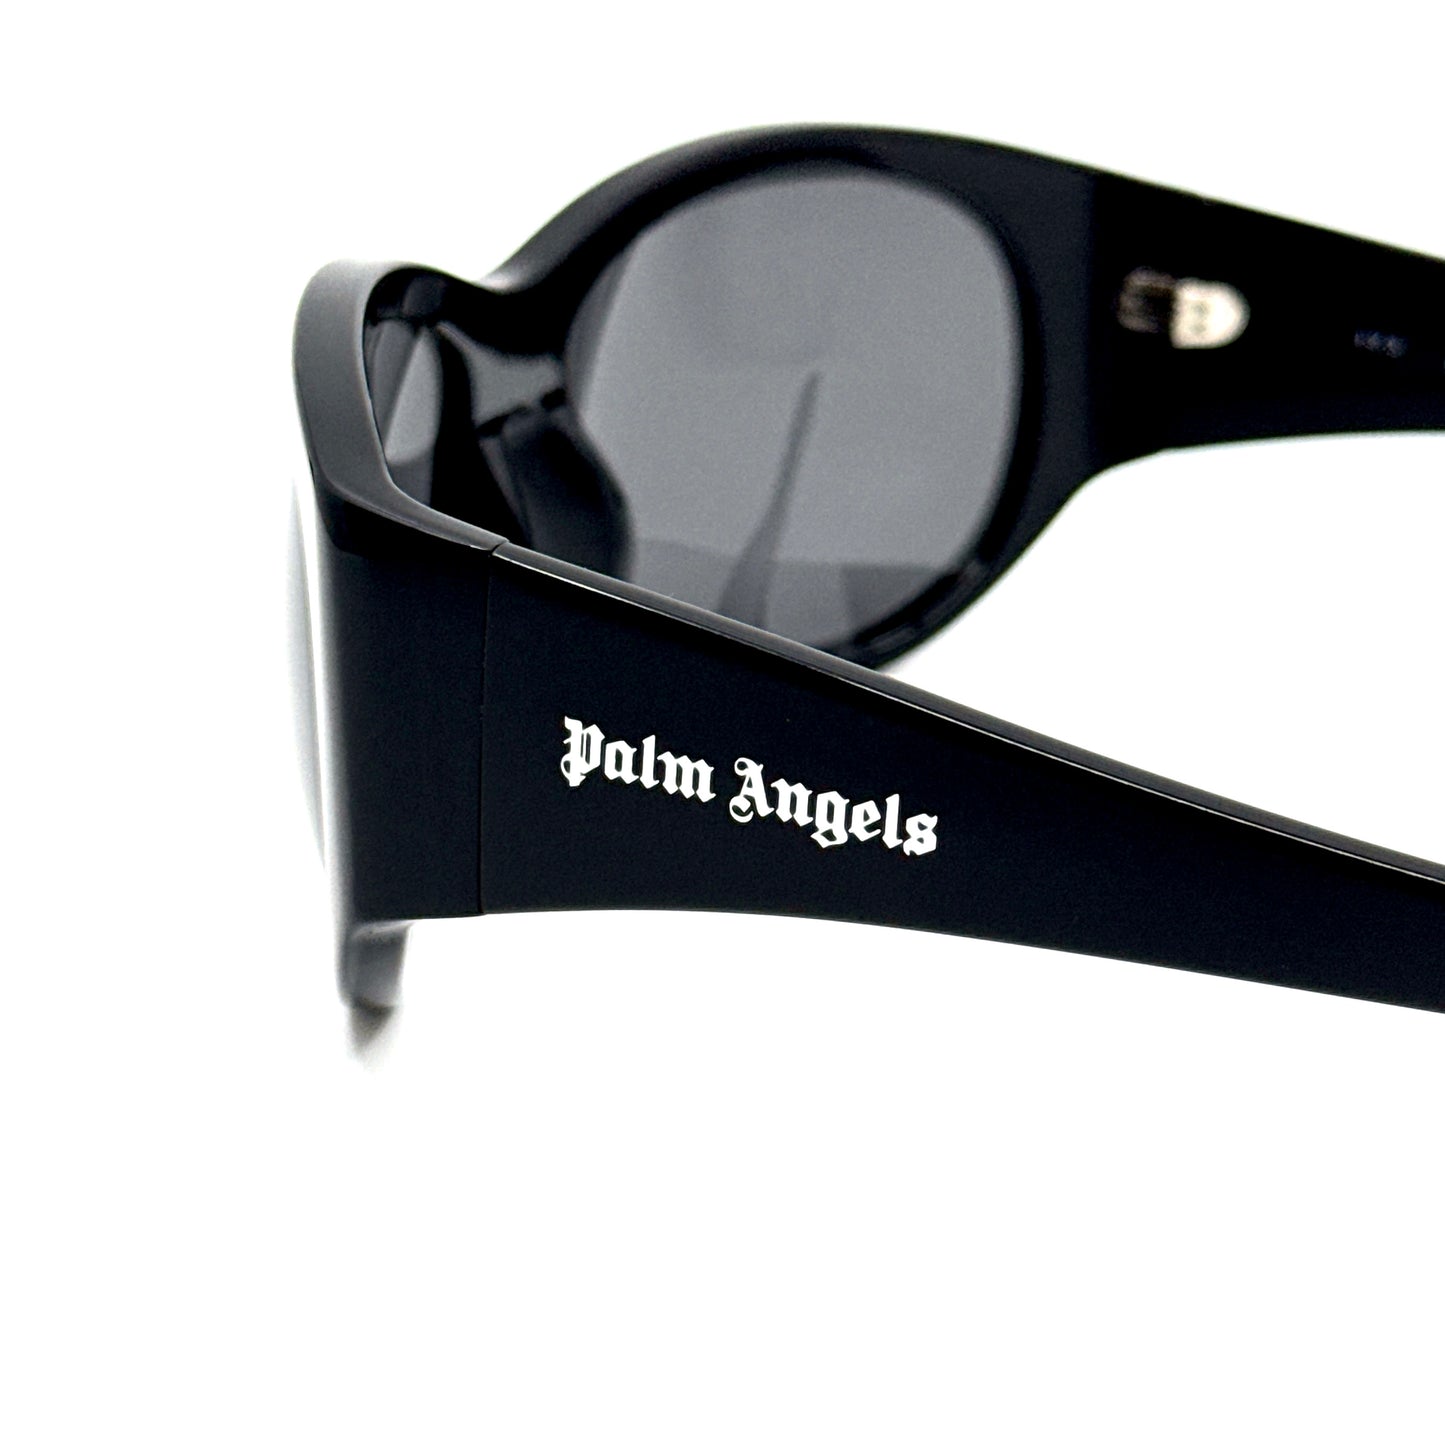 PALM ANGELS Sunglasses PERI038 1007